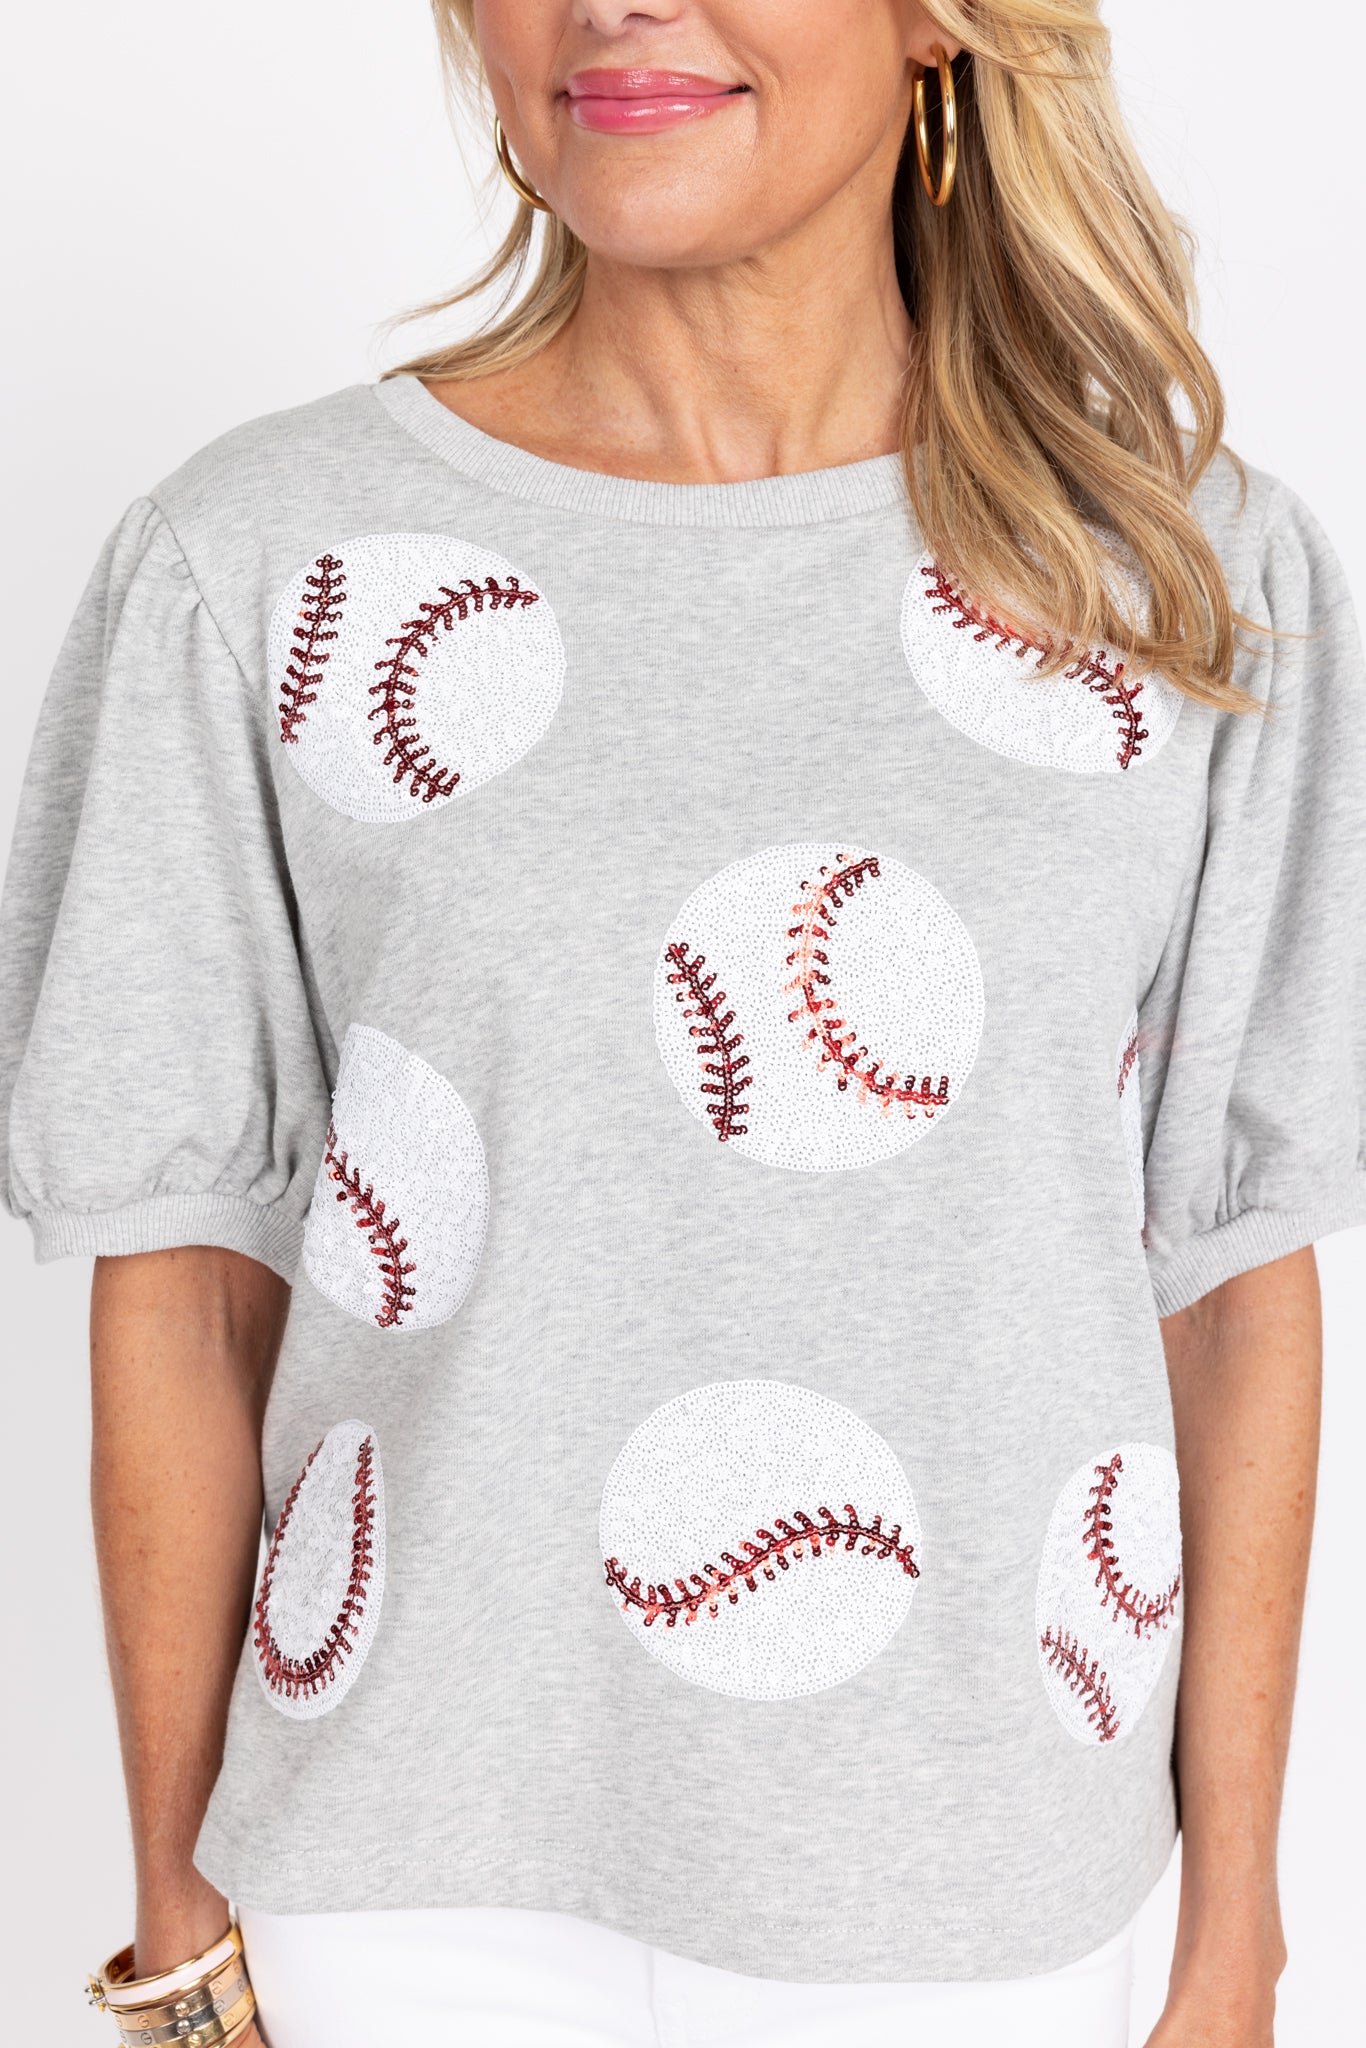 Ruthie Baseball Top- Gray